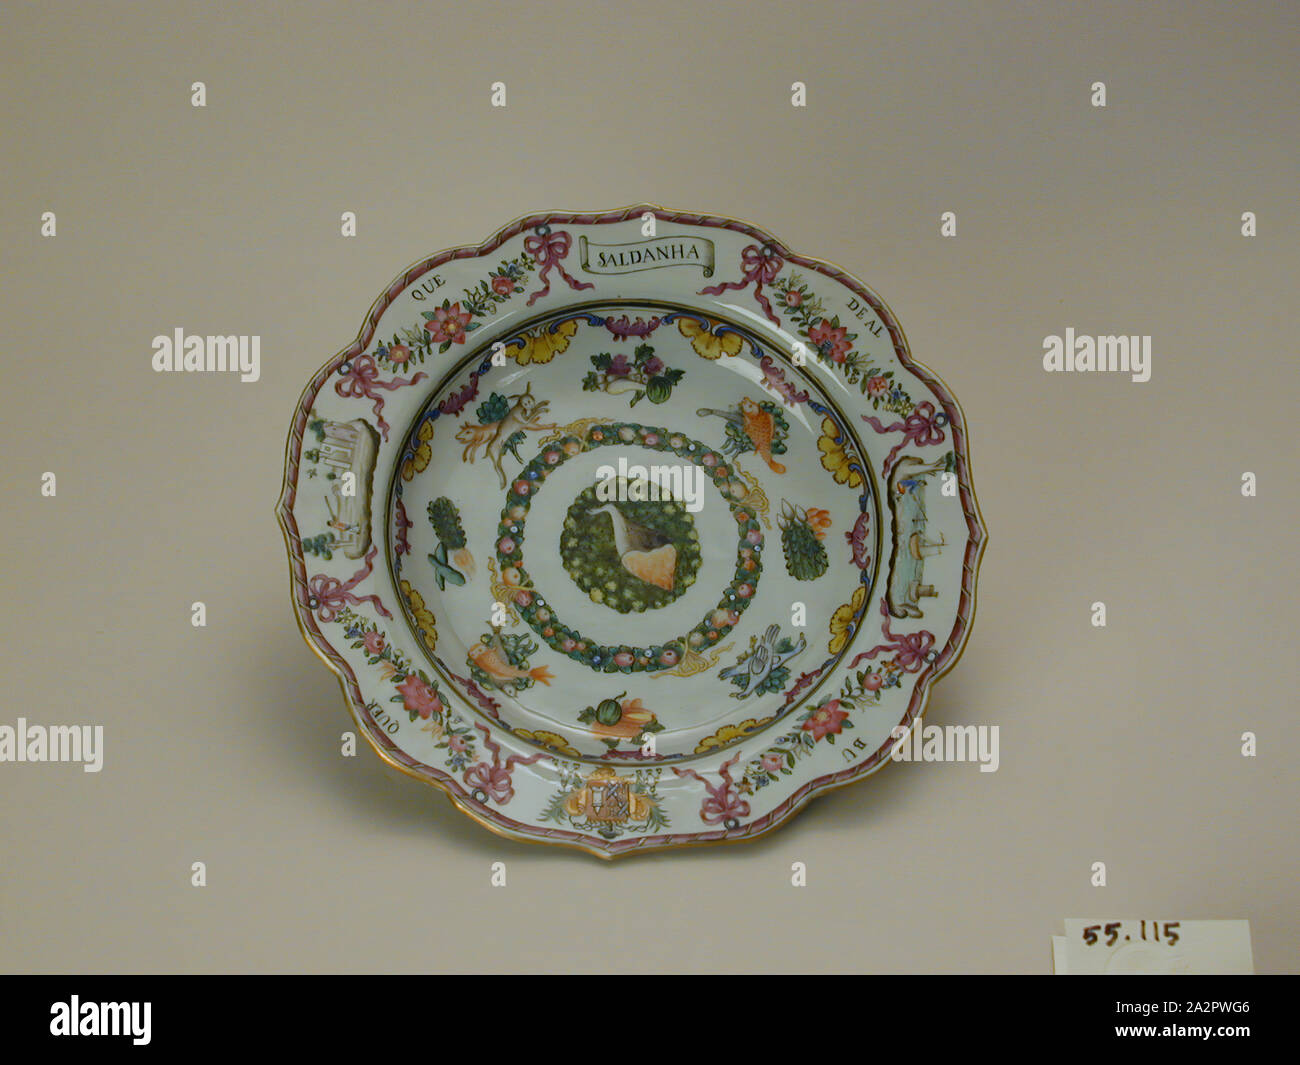 Inconnu (Chinois), assiette creuse, 18e siècle, les coller avec de la porcelaine, émail polychrome Hauteur x diamètre : 1 1/2 x 8 7/8 in. (3,8 x 22,5 cm Banque D'Images